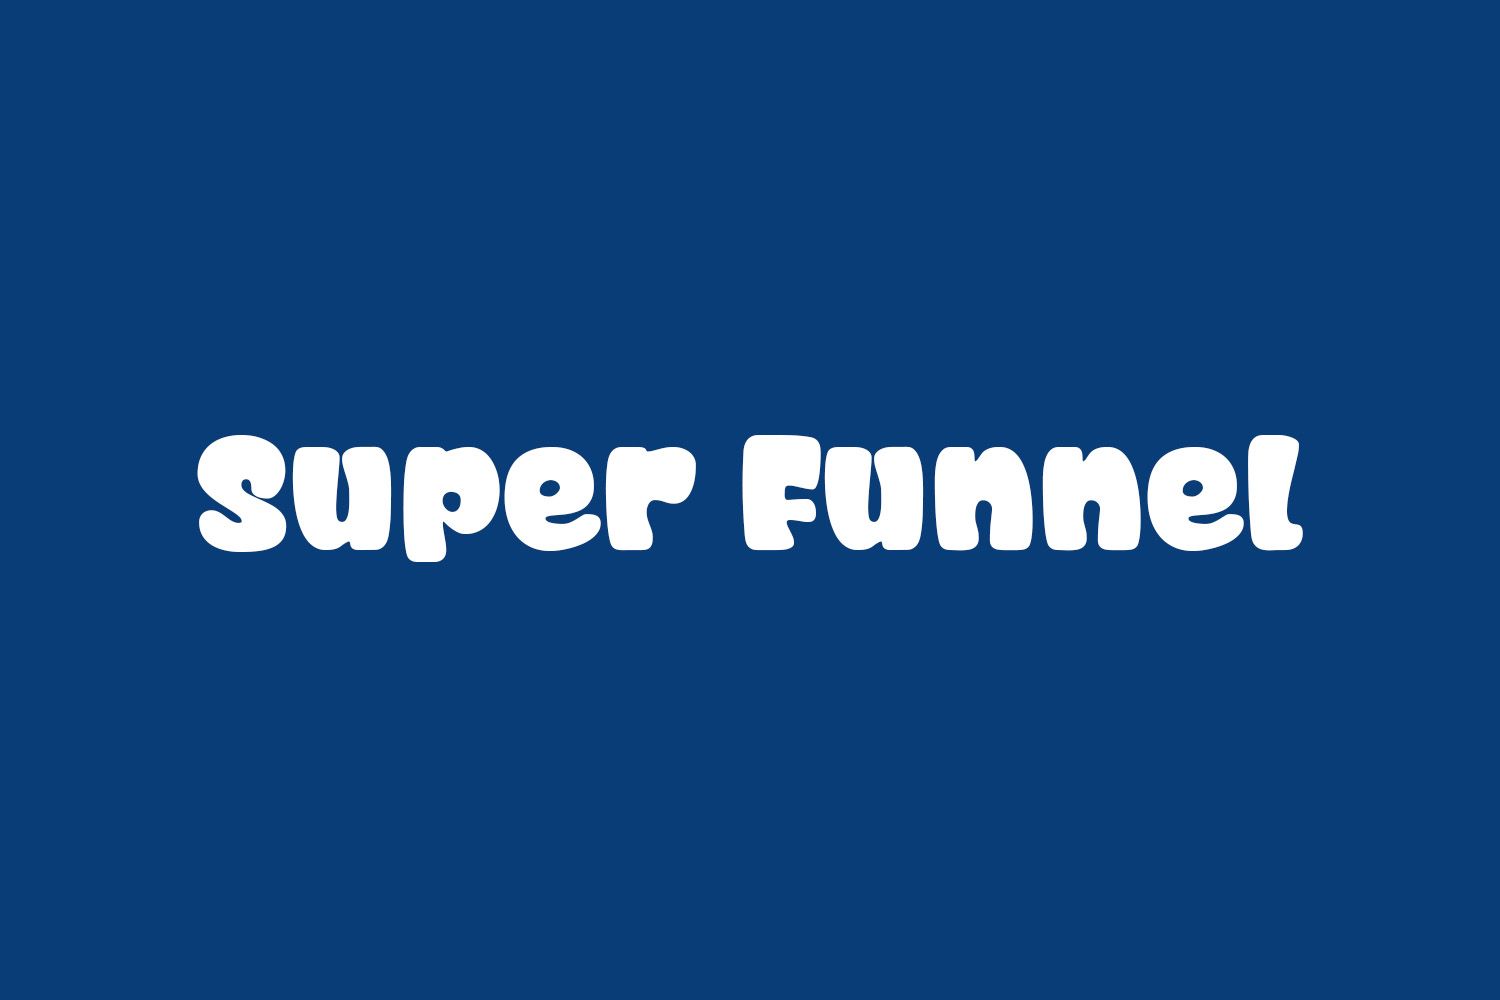 Super Funnel Free Font